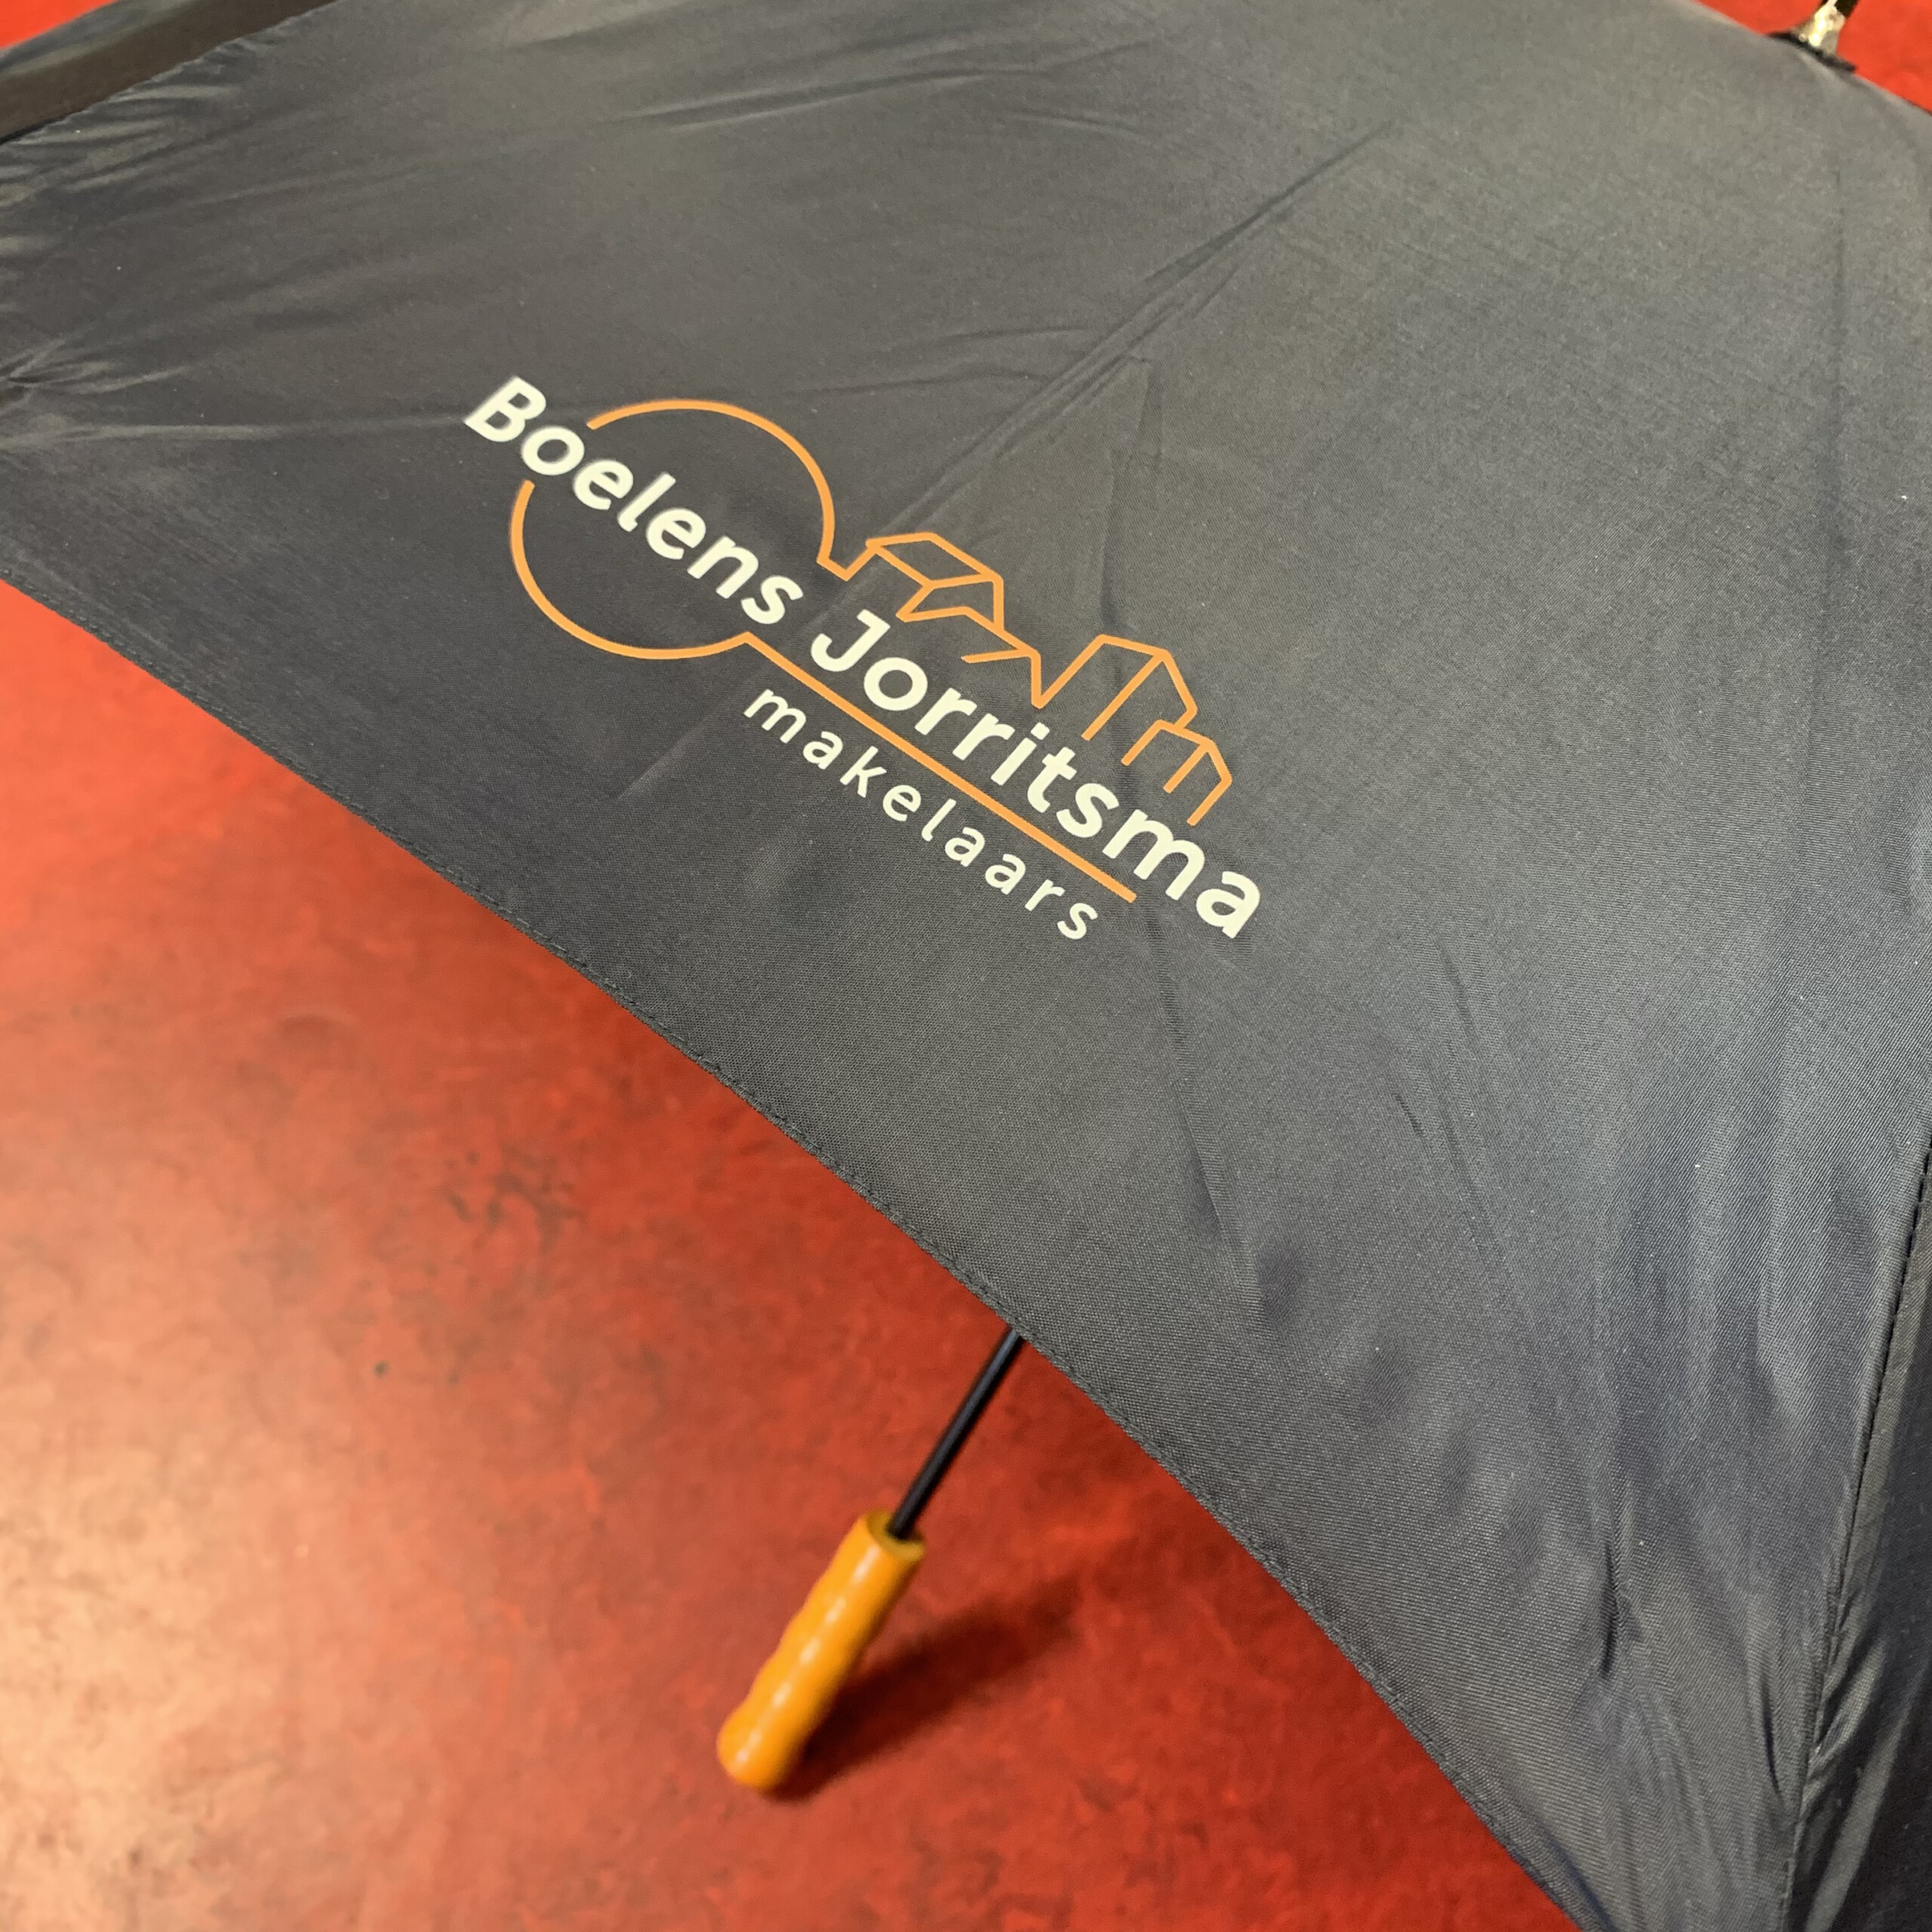 drukkerij kleen Meppel ontwerp ontwerpbureau relatiegeschenken reclame paraplu